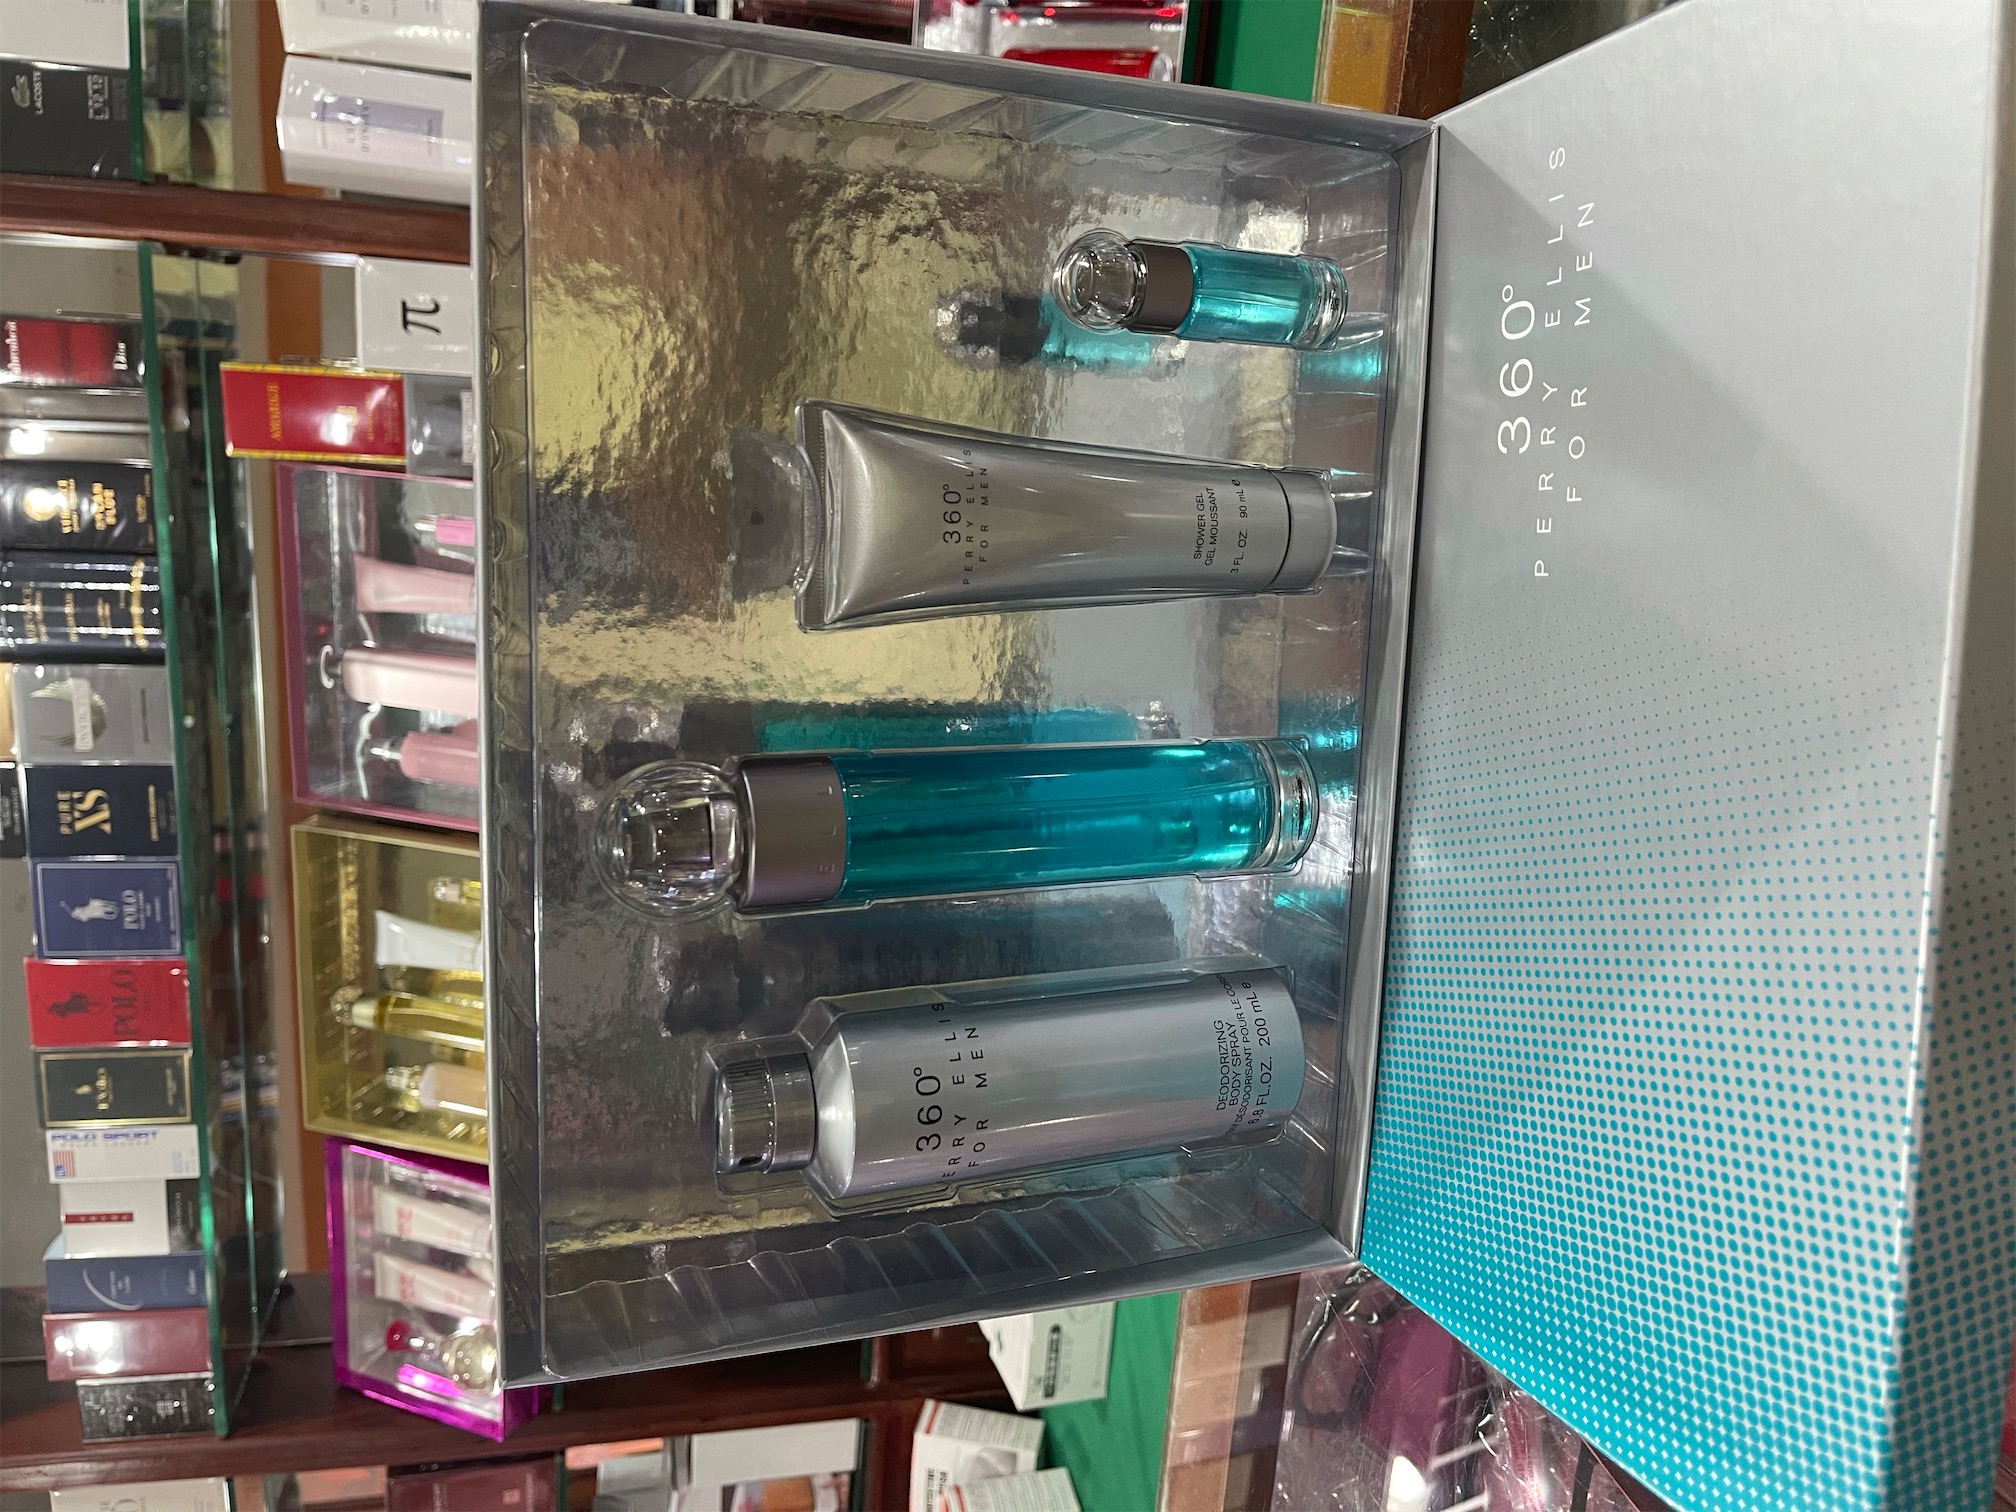 salud y belleza - Set perfume Perry Ellis 360•Original. AL POR MAYOR Y AL DETALLE 0